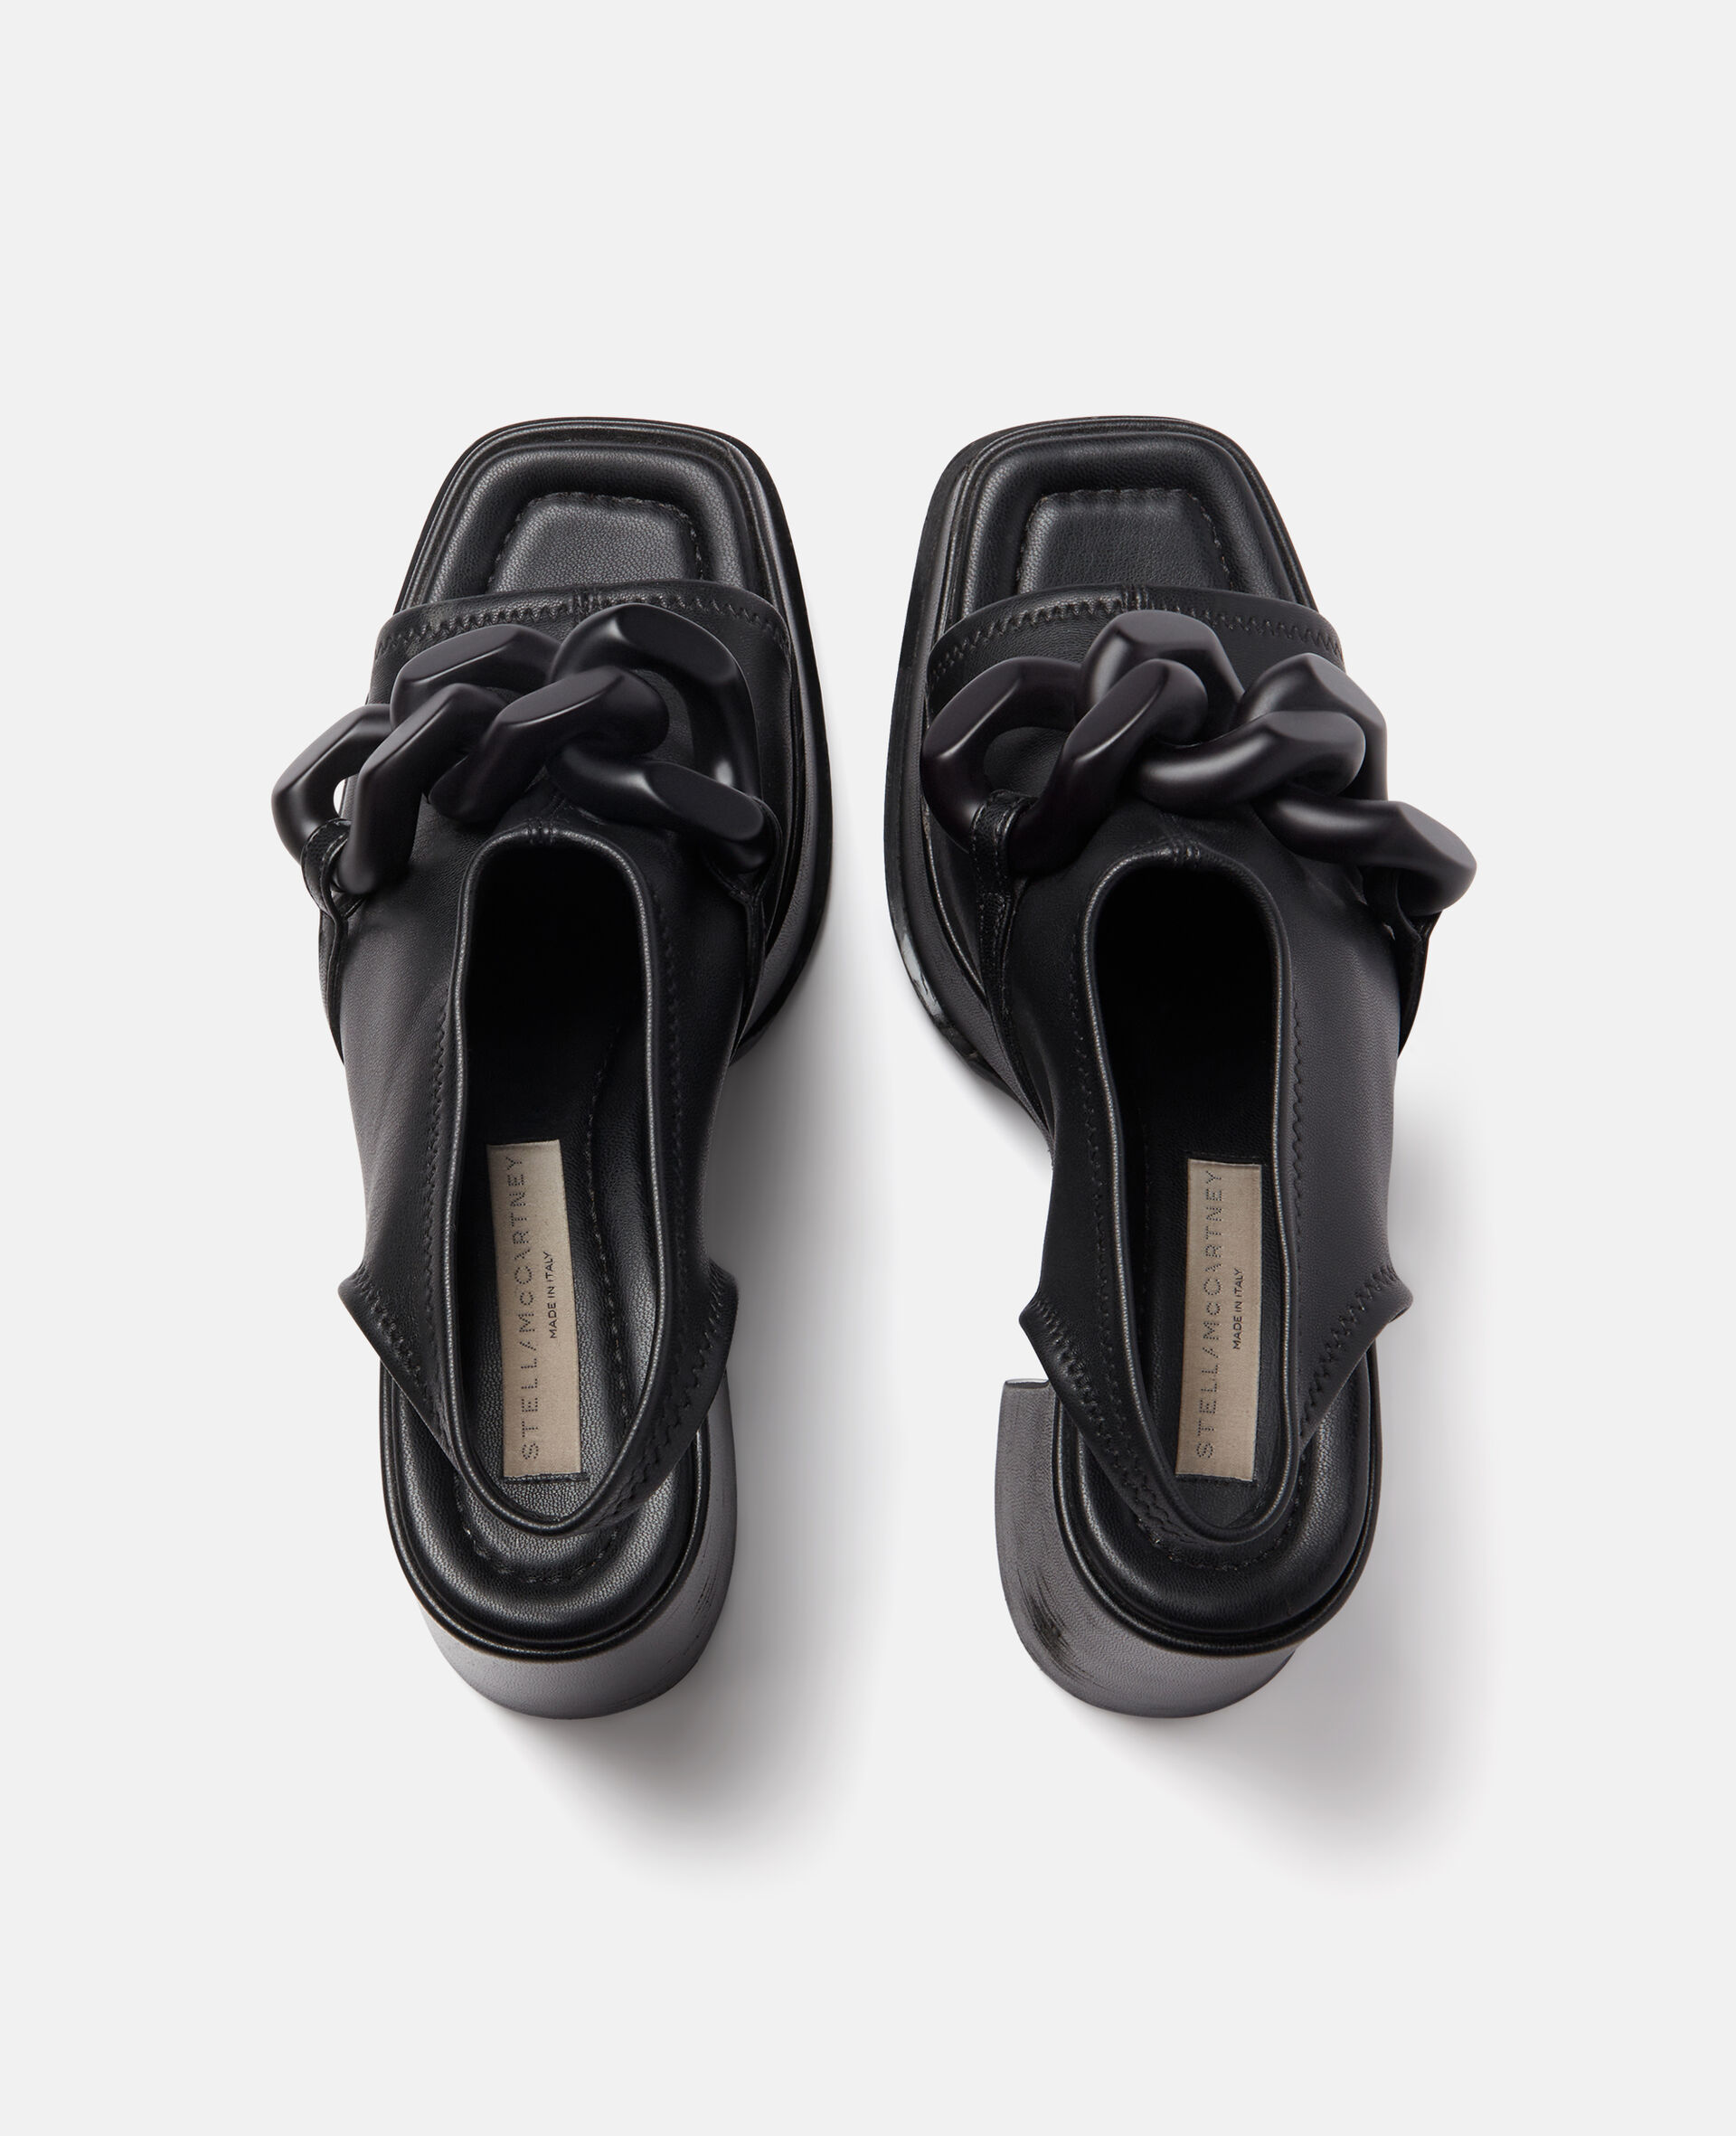 Skyla Chain Platform Sandals-Black-large image number 3